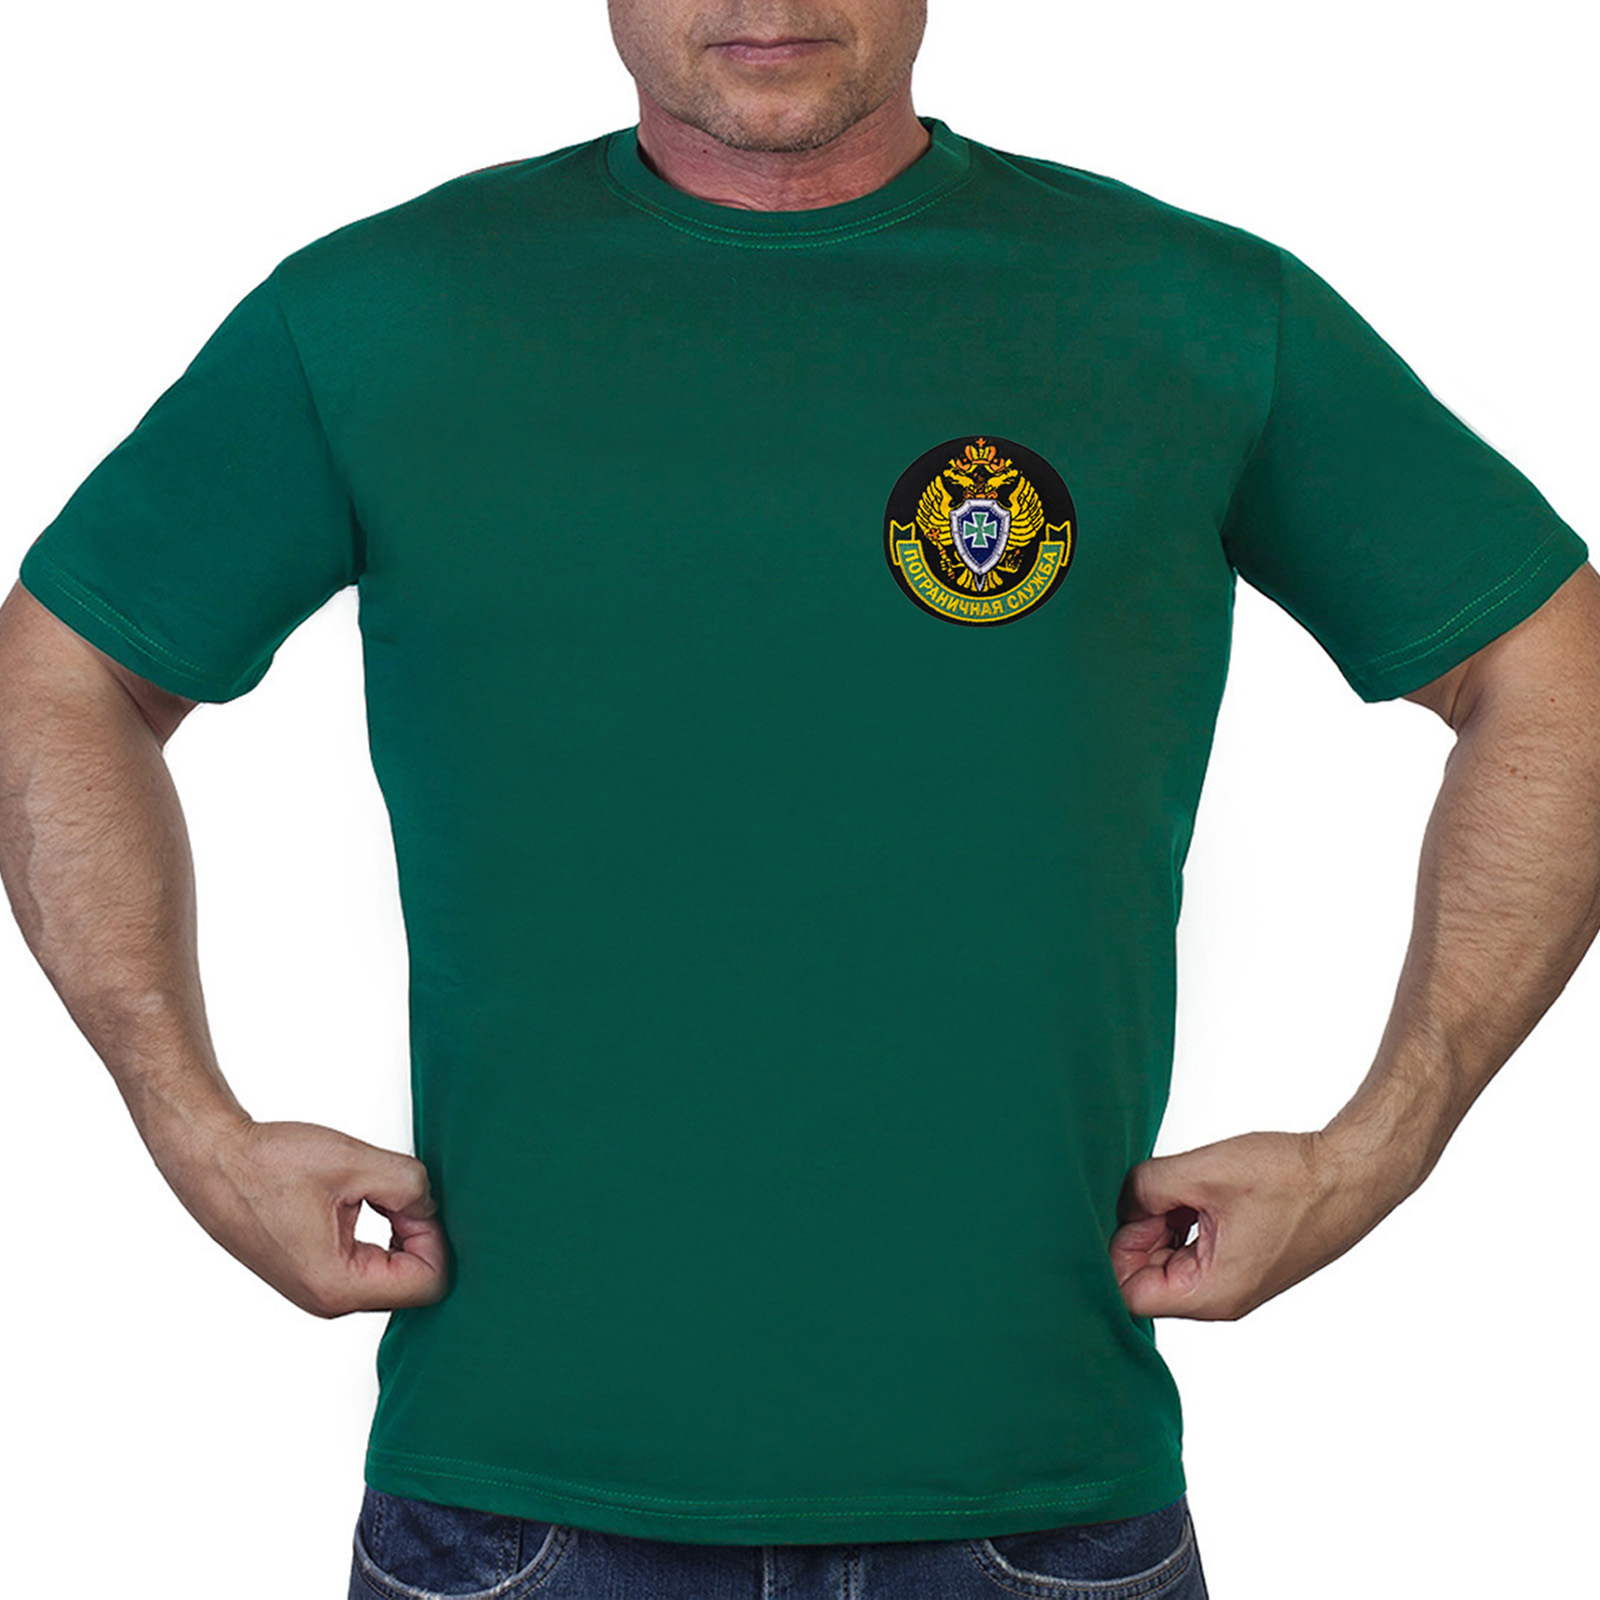 Удобная футболка с эмблемой Пограничной службы - купить с доставкой или самовывозом